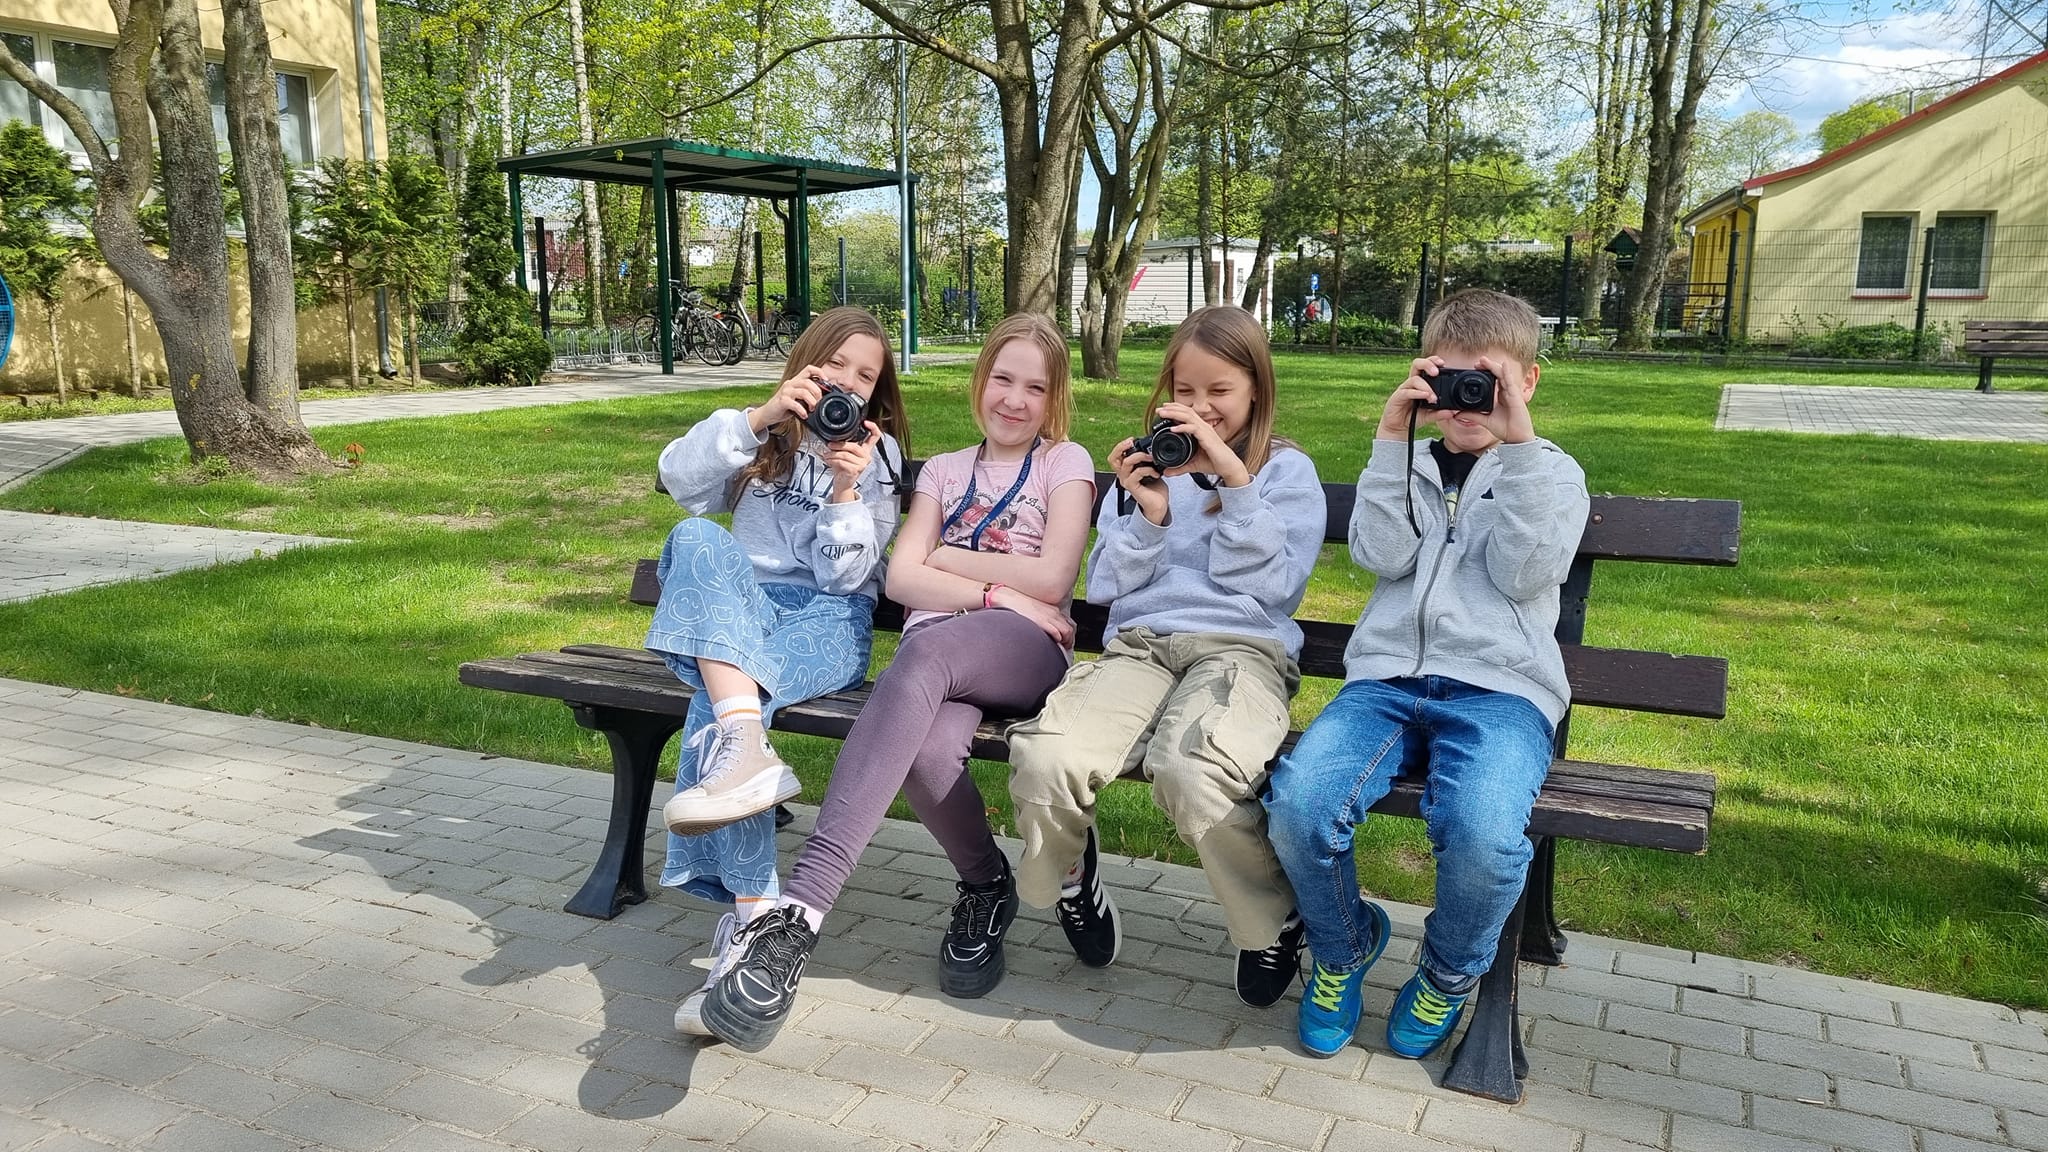 Uczniowie siedzą na ławce przed szkołą i trzymają aparaty fotograficzne 